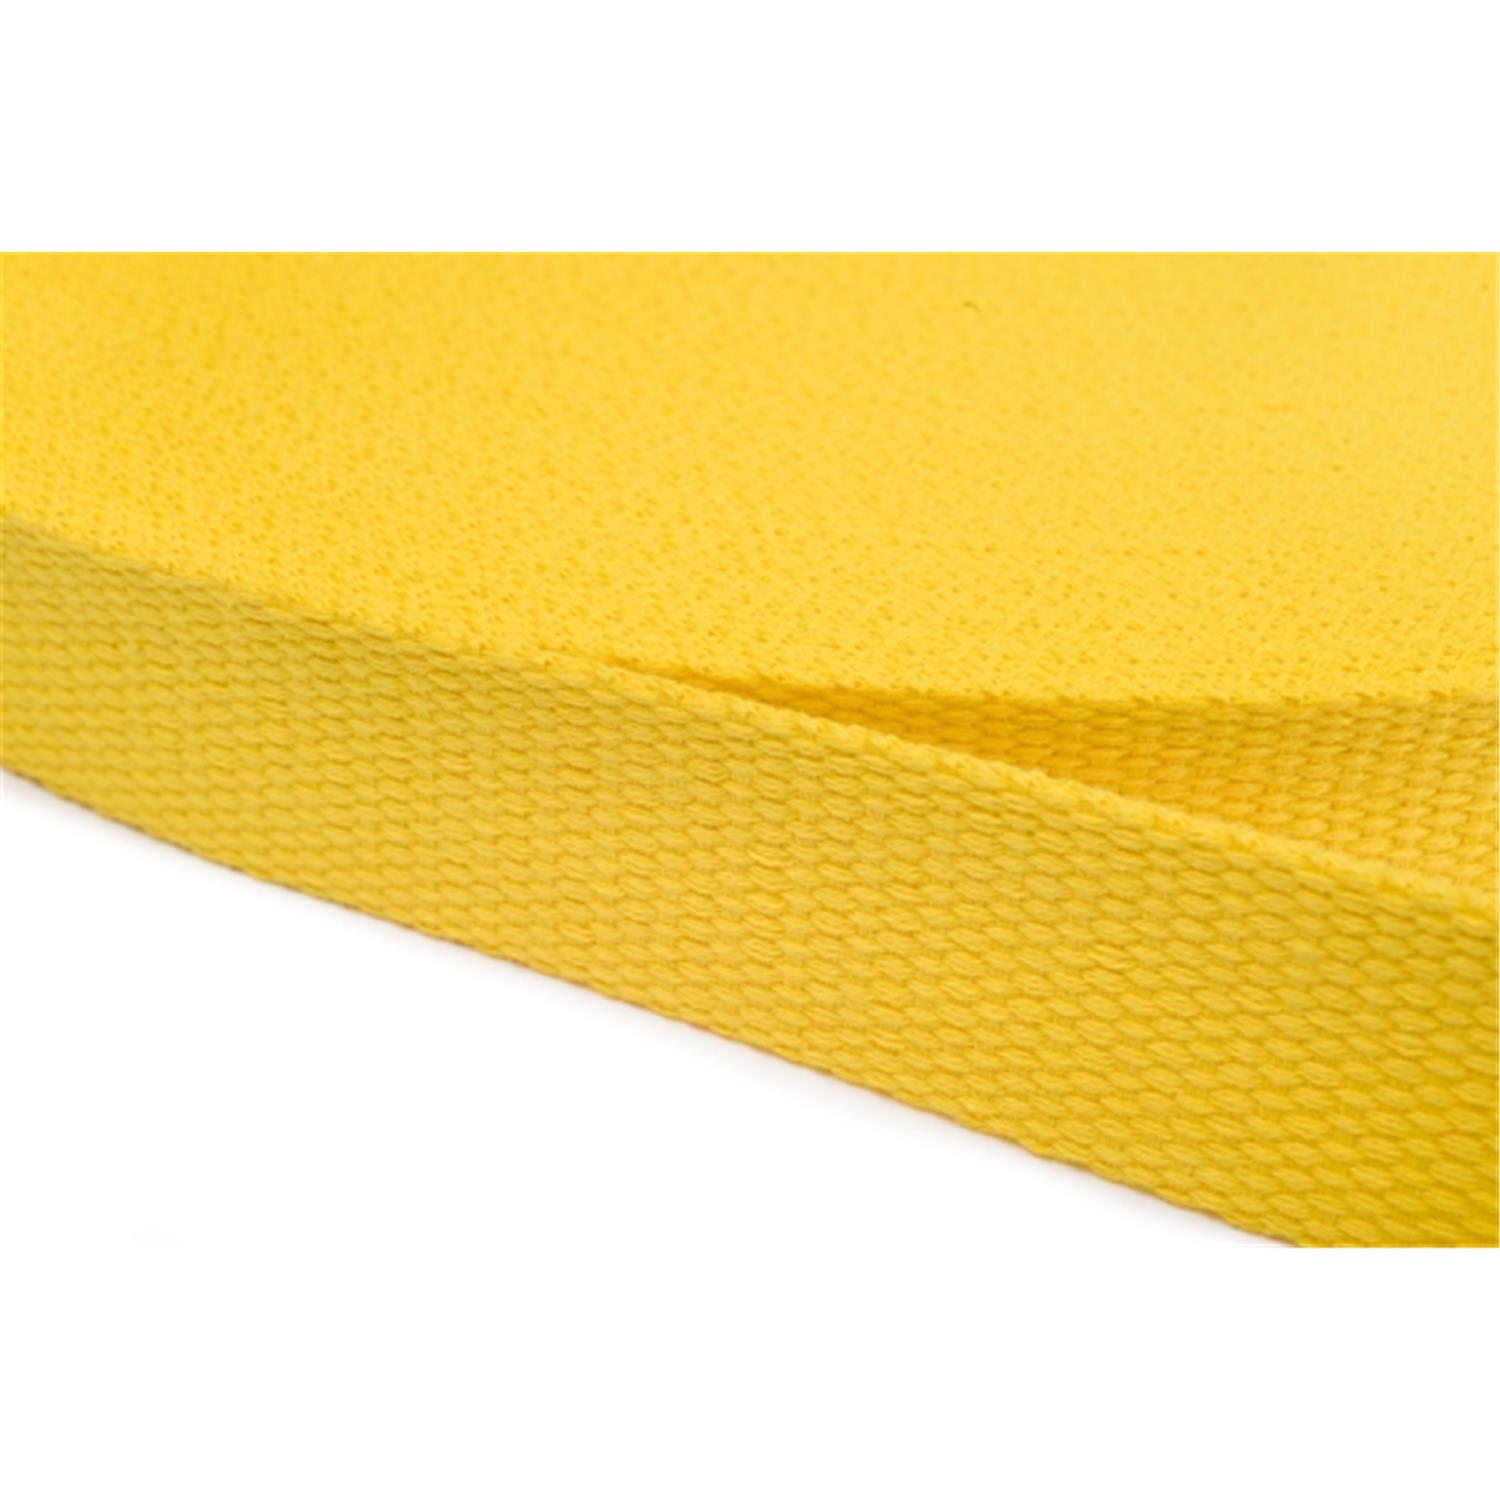 Gurtband aus Baumwolle 20mm in 20 Farben 05 - gelb 12 Meter